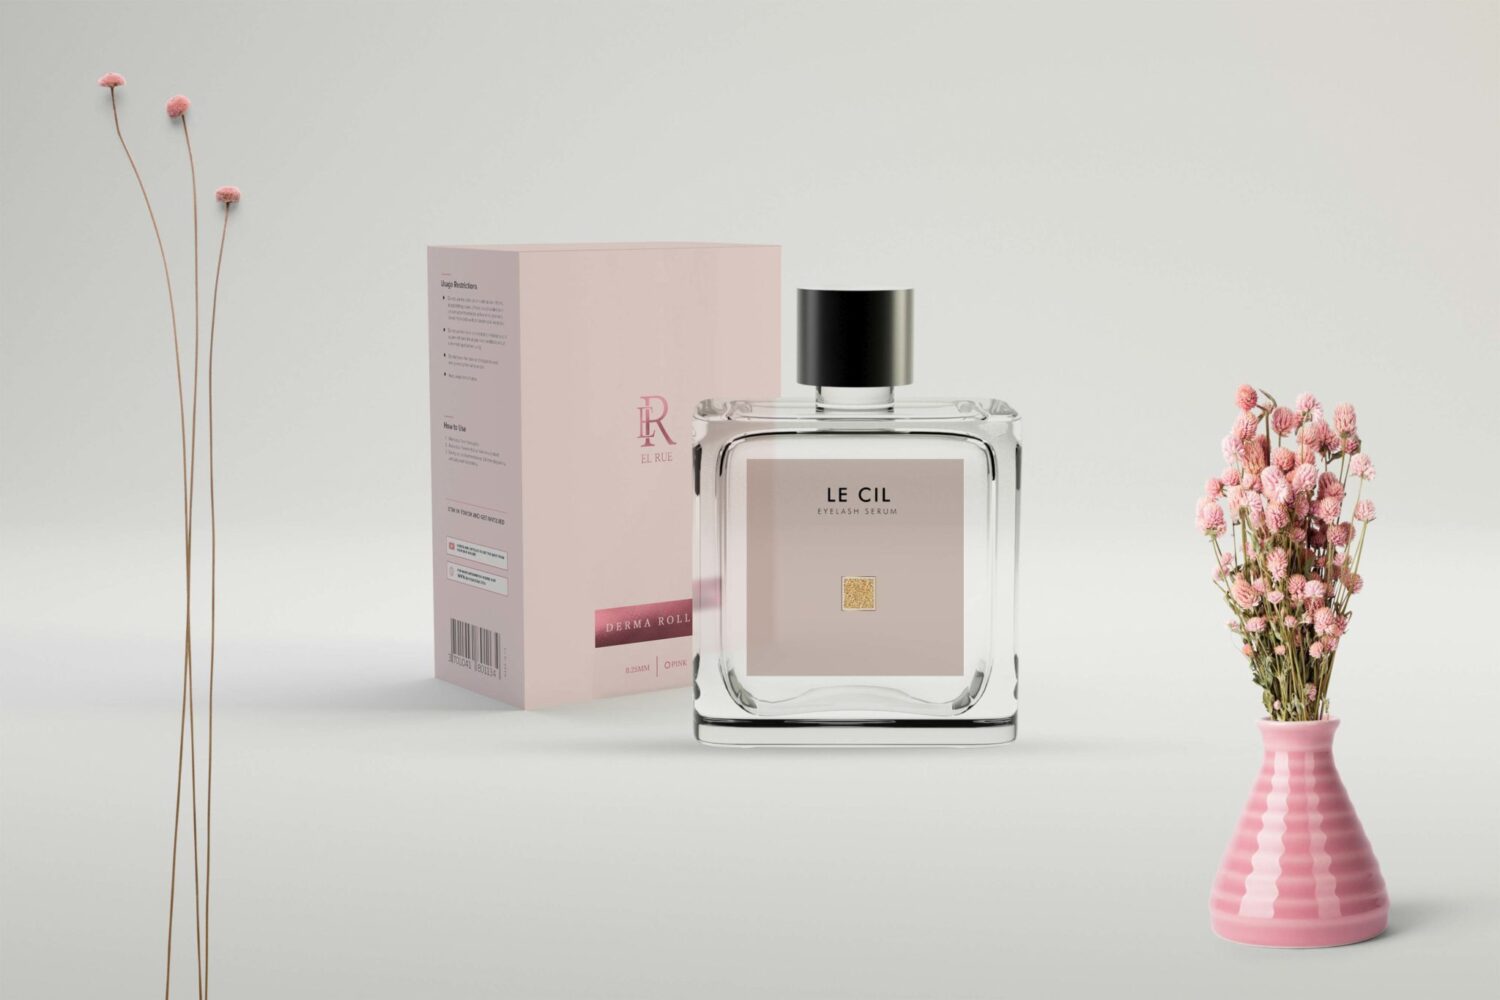 Perfume Packaging Mockup